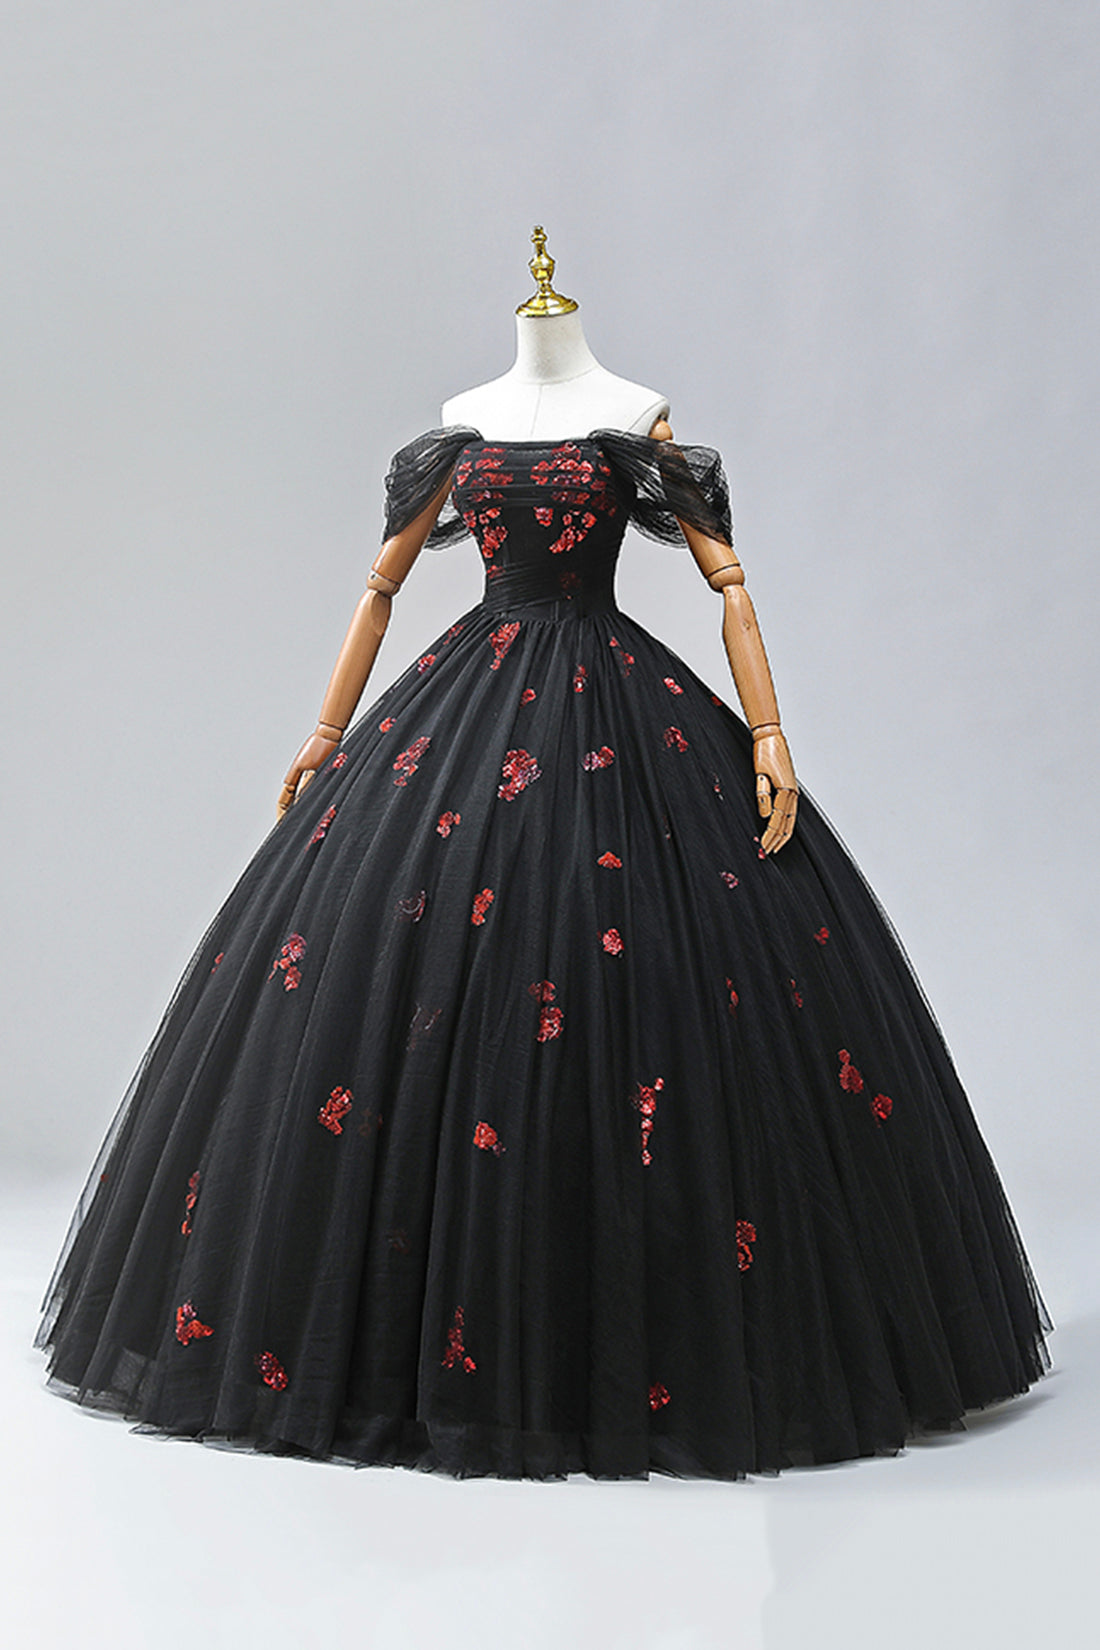 Black Tulle Sequins Long Formal Dress, A-Line Off the Shoulder Backless Evening Dress